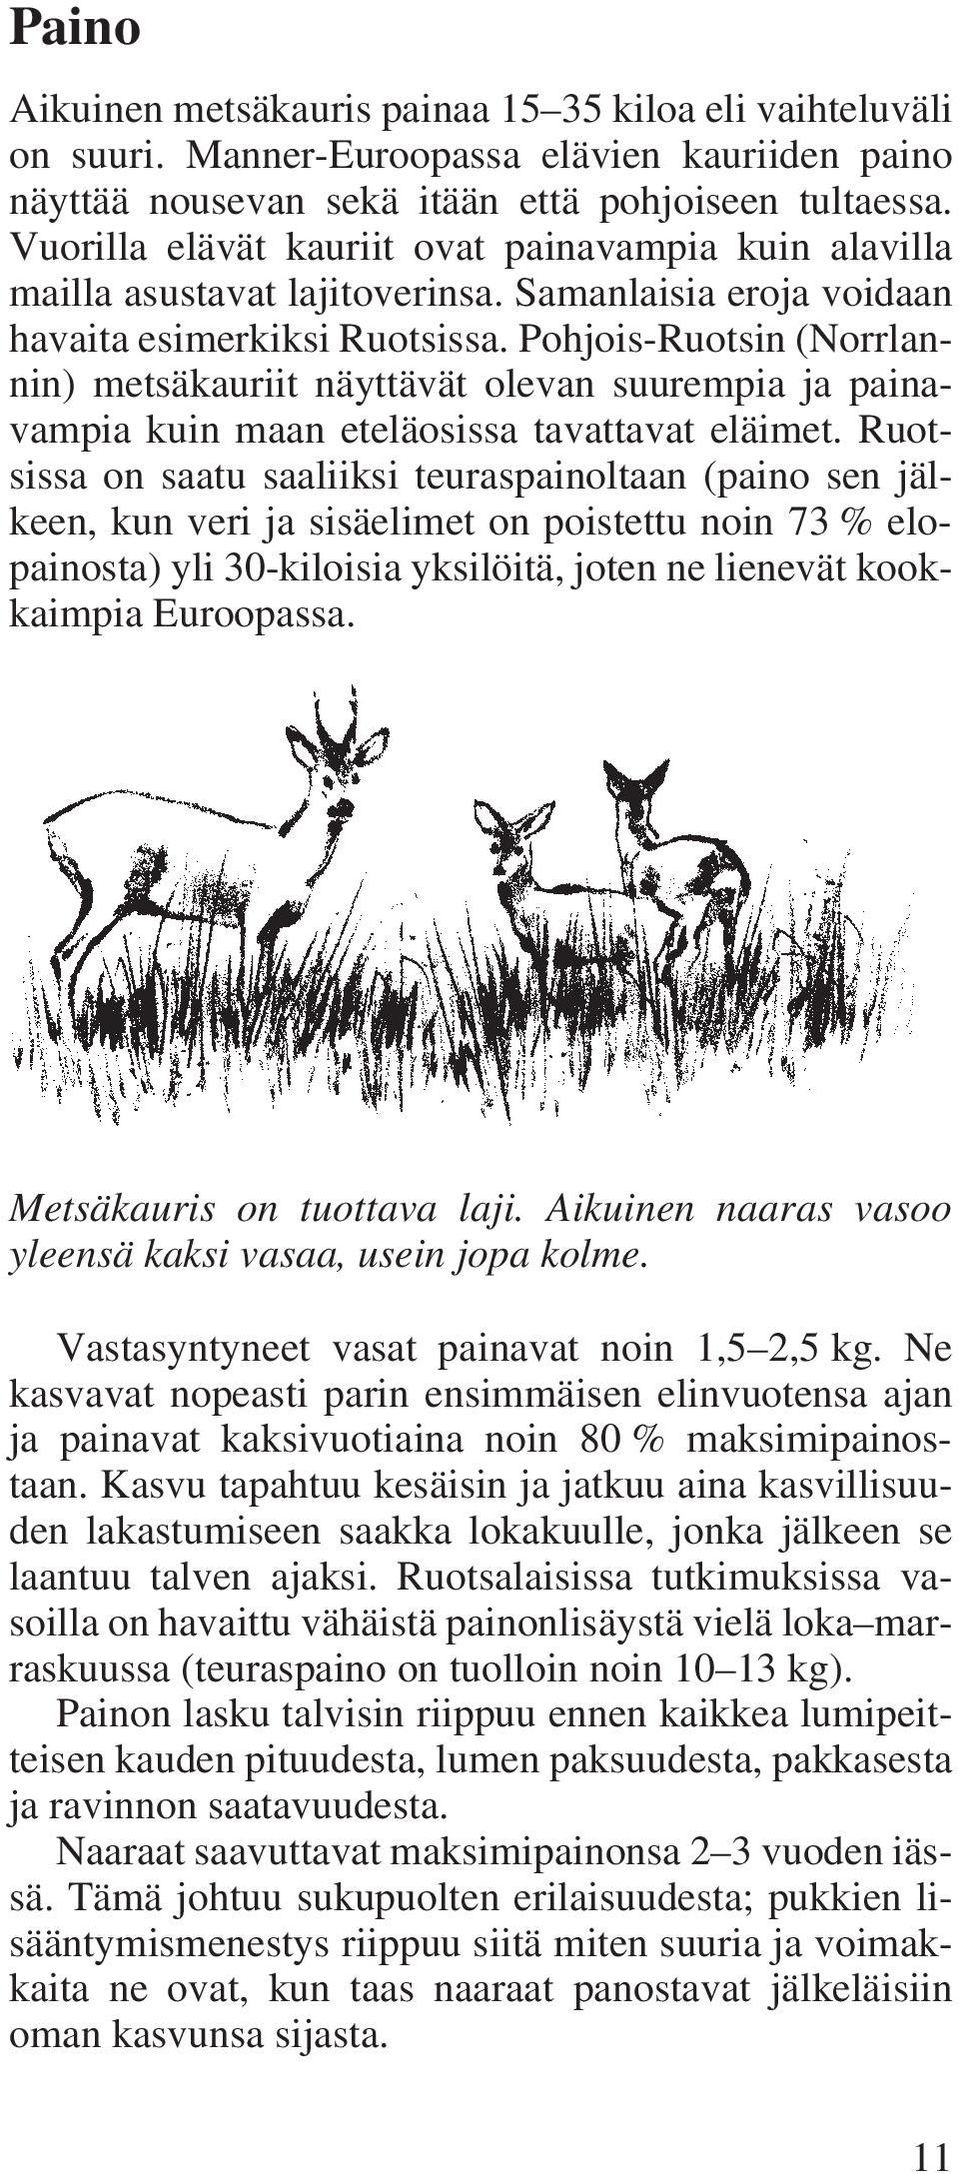 Pohjois-Ruotsin (Norrlannin) metsäkauriit näyttävät olevan suurempia ja painavampia kuin maan eteläosissa tavattavat eläimet.